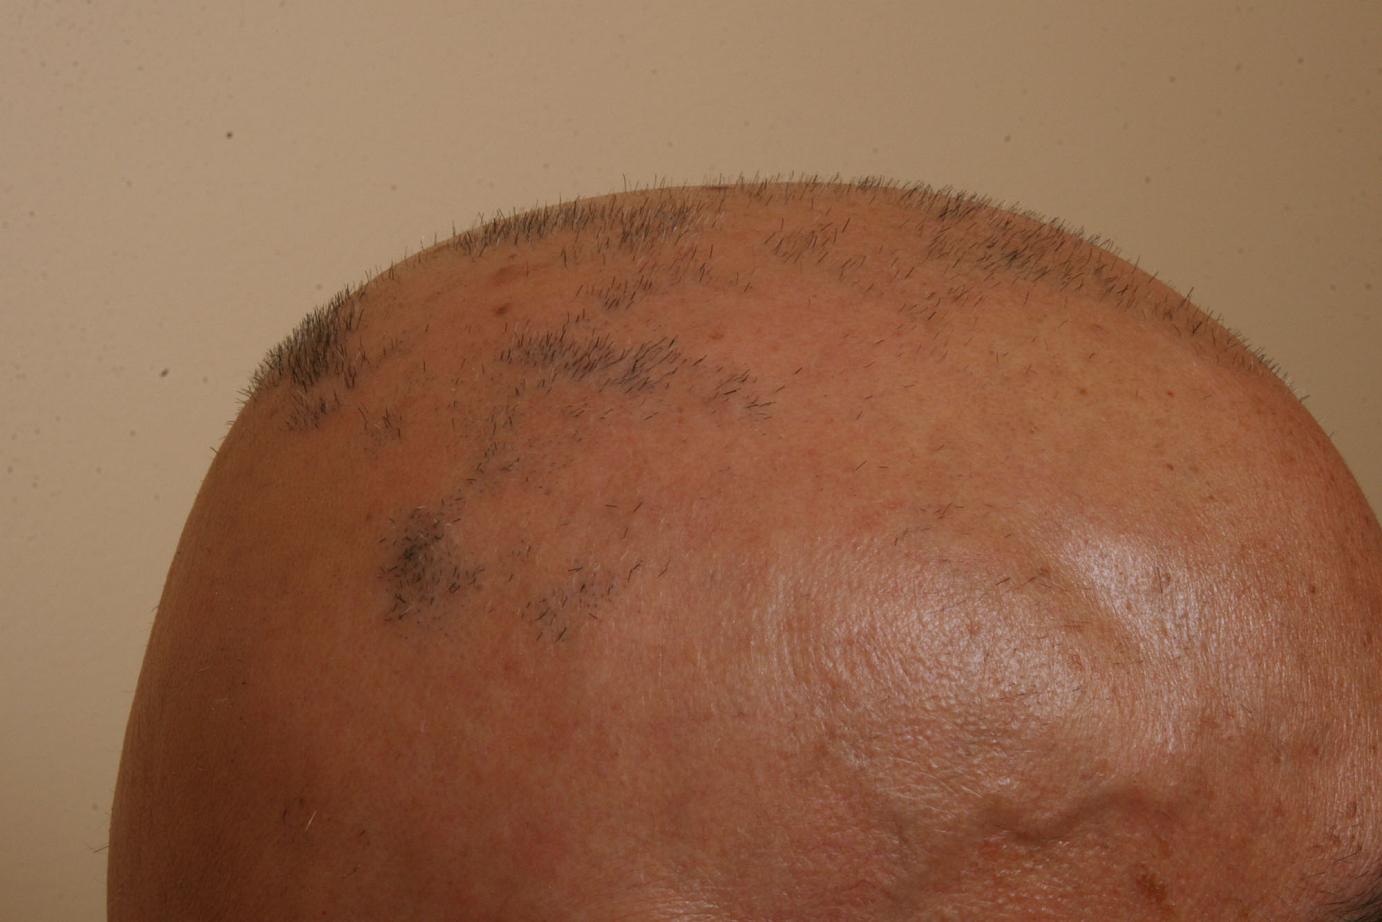 wide spread alopecia areata